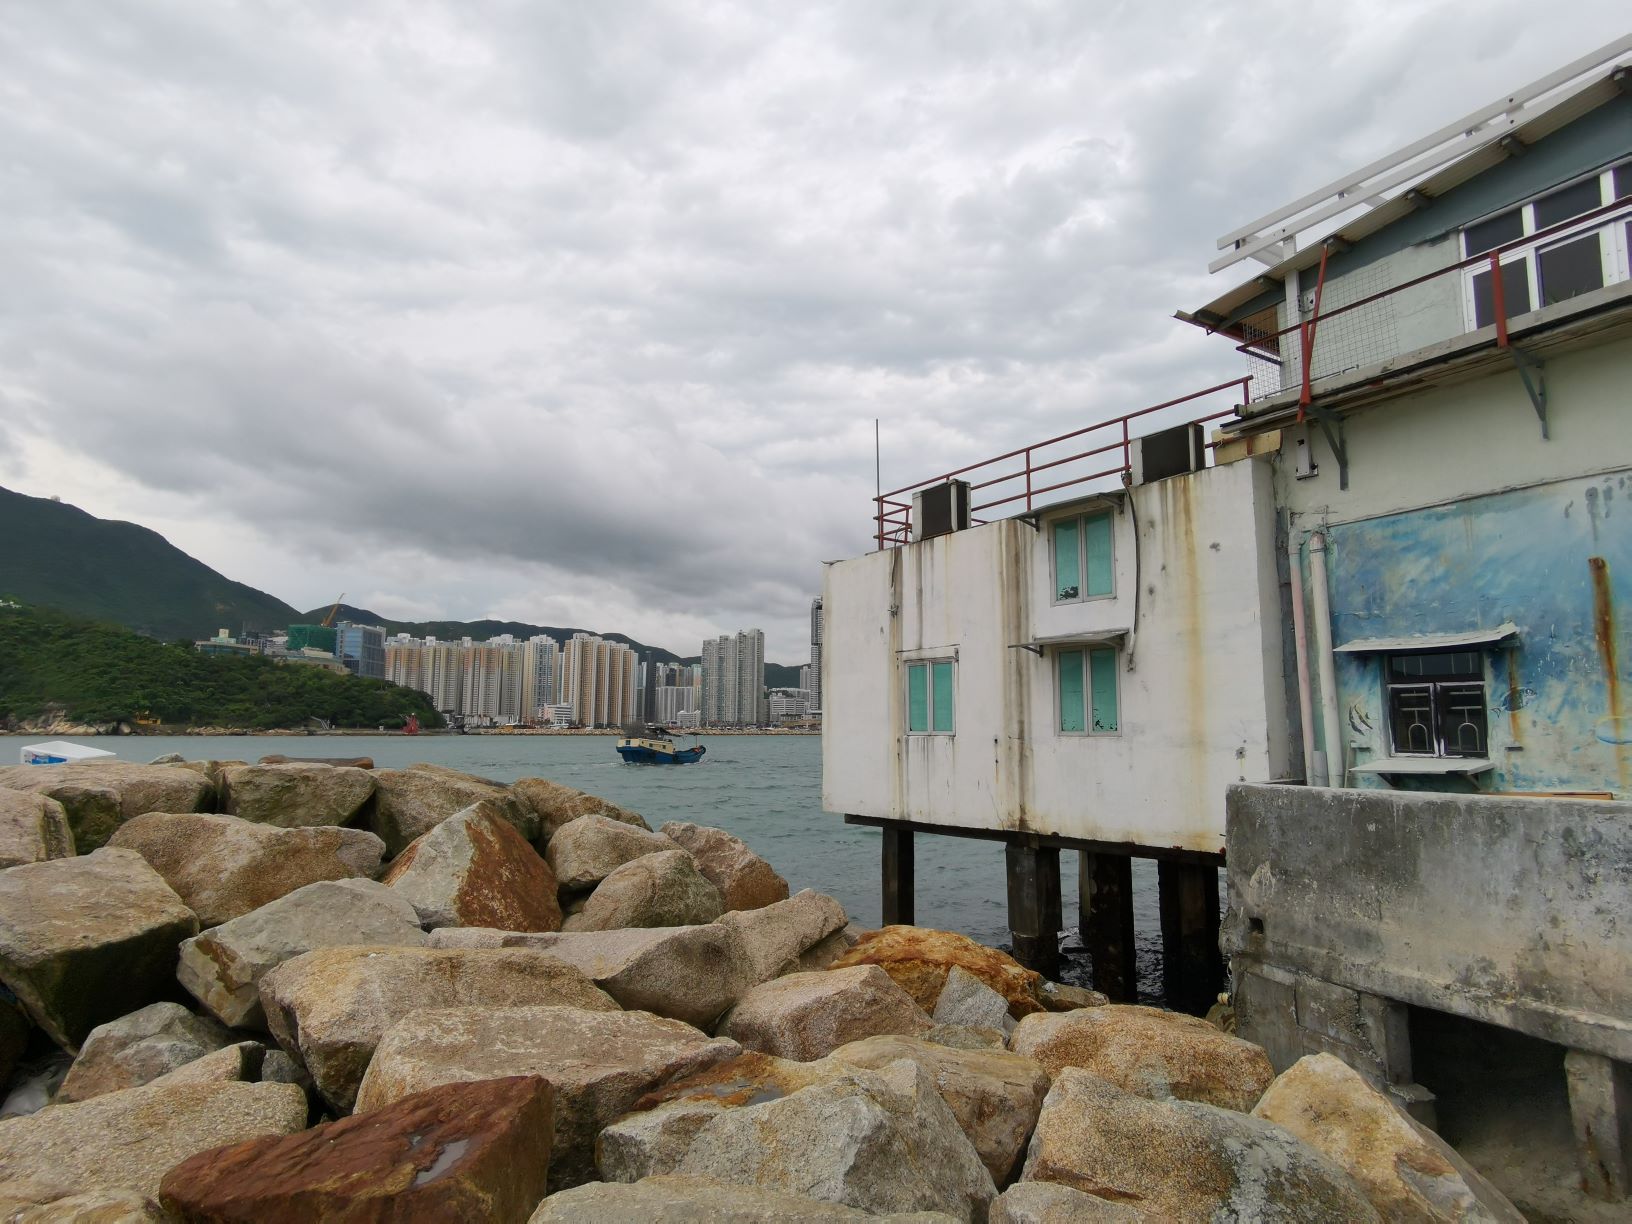 即使有近岸修建的石築海堤，一些寮屋也未能受惠。© Greenpeace